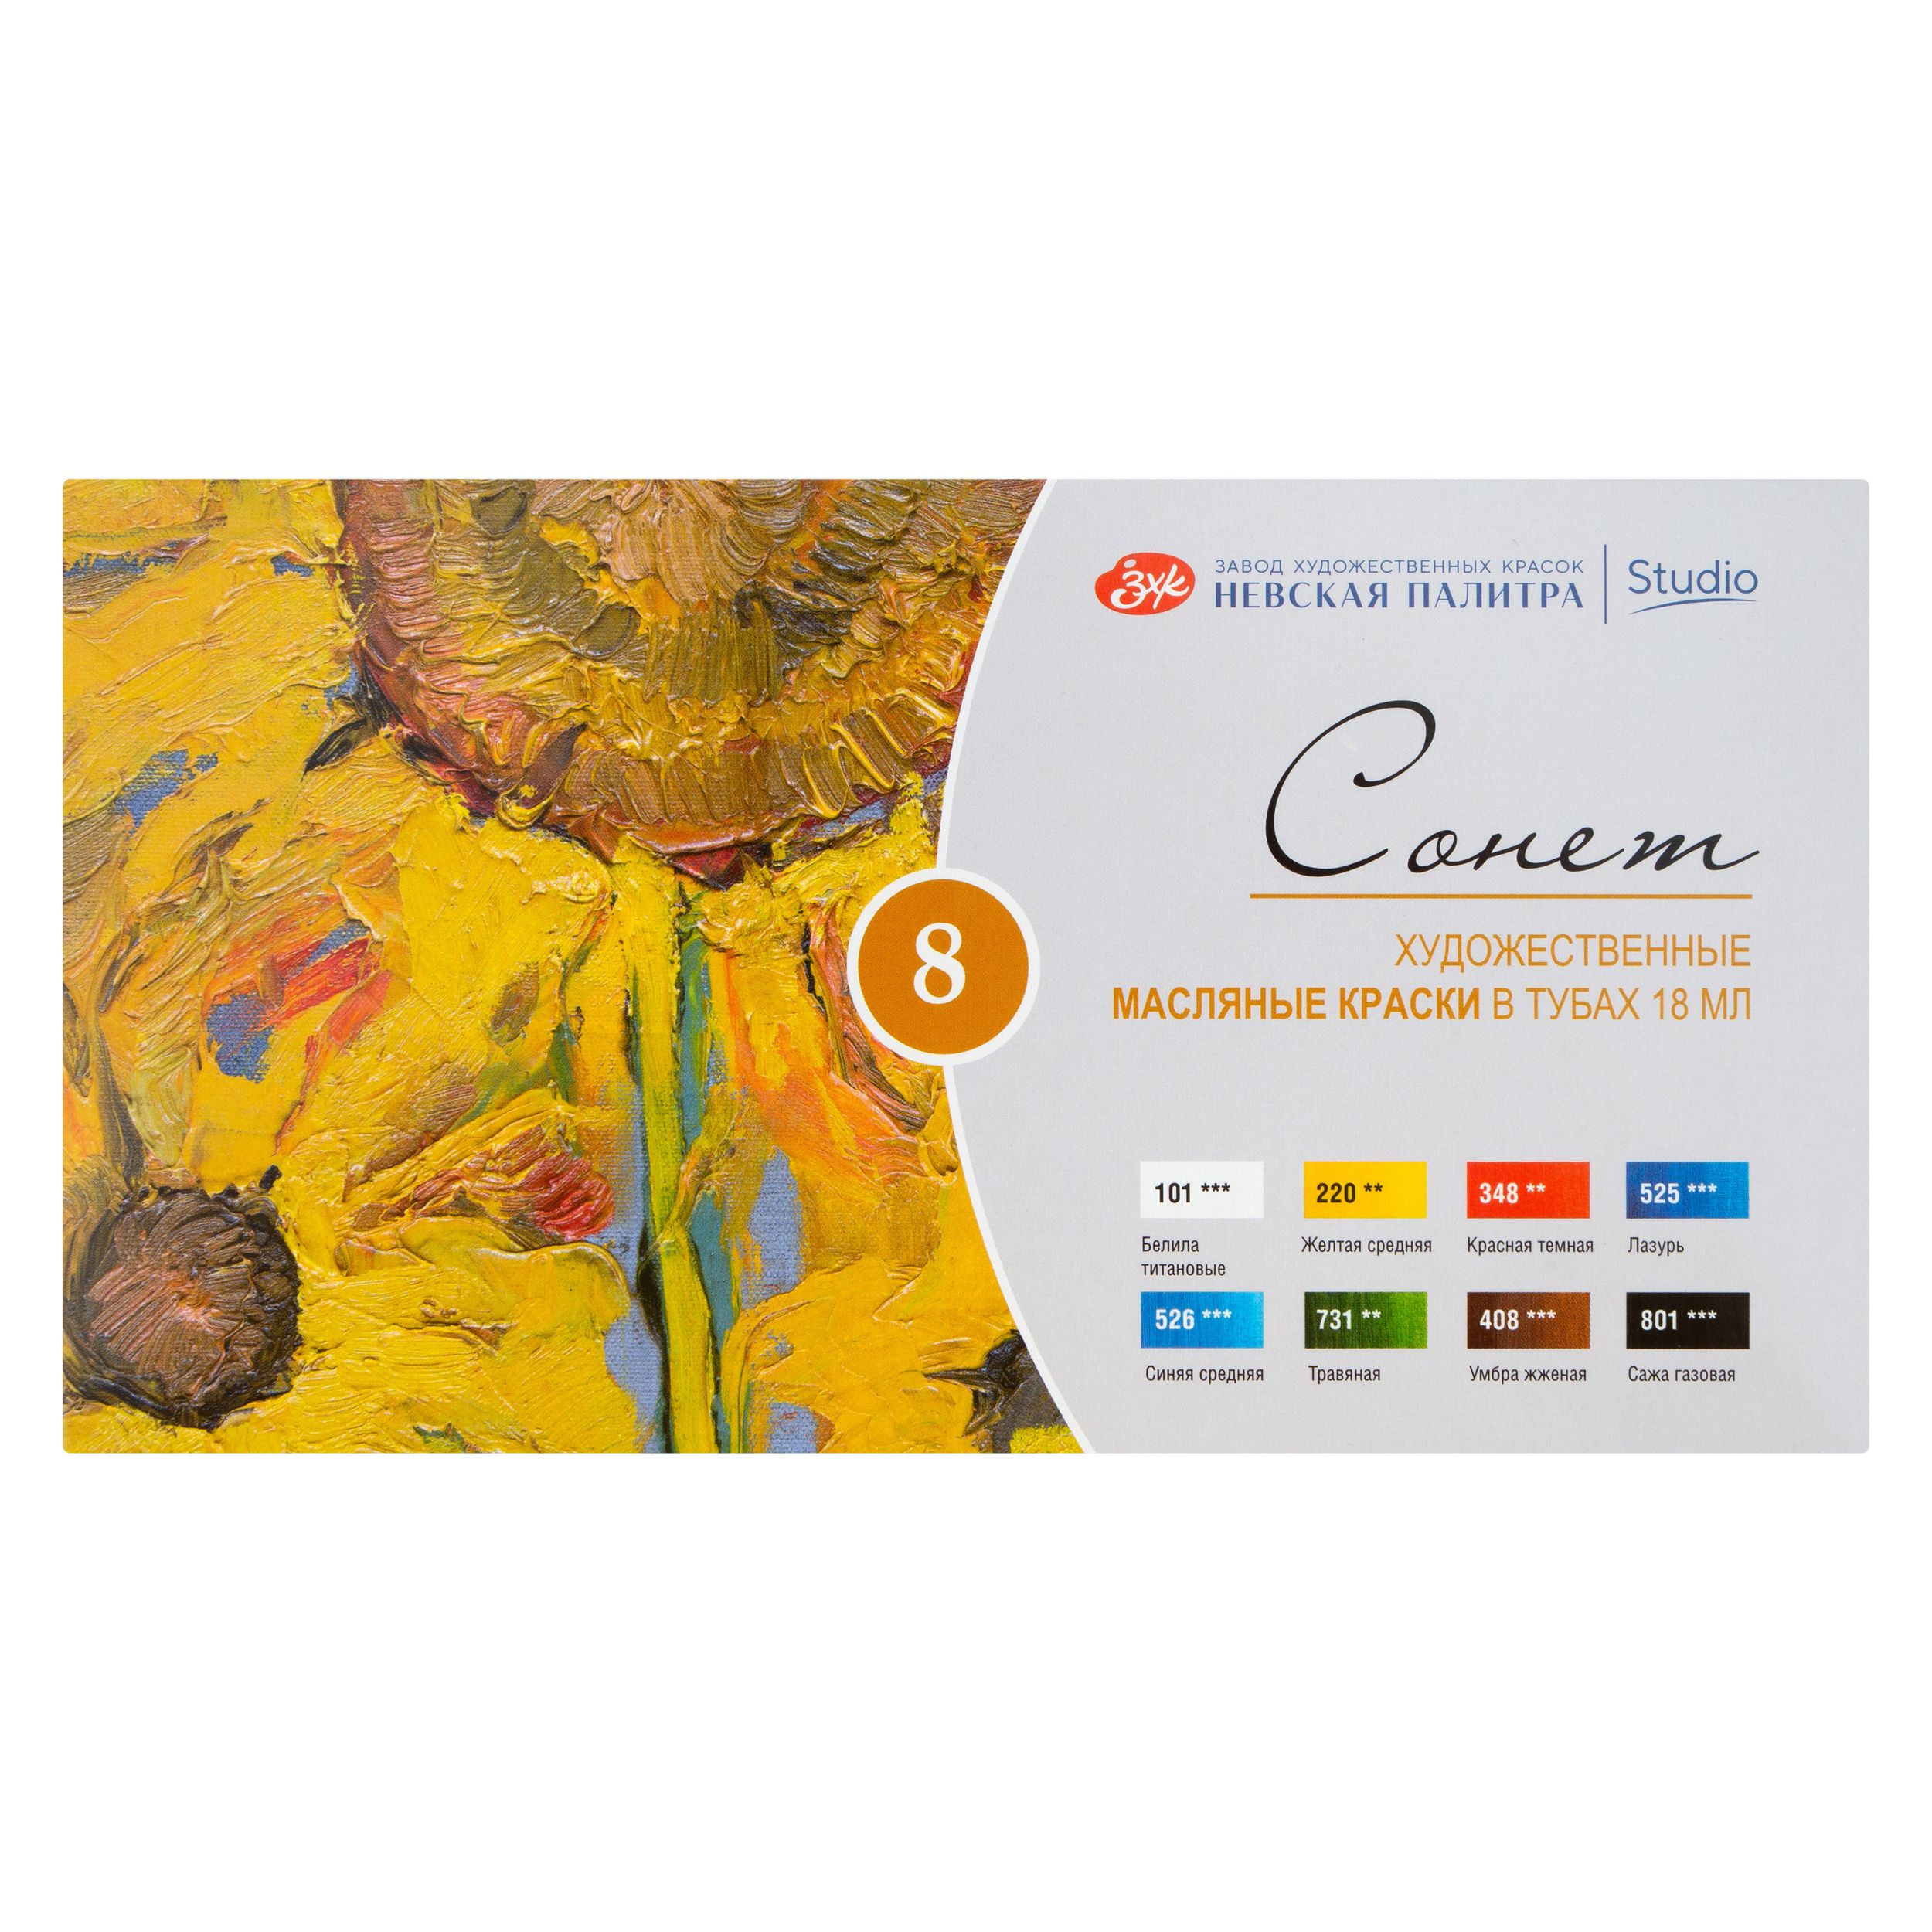 Краски масляные для рисования Невская палитра Сонет 26412026, 8 цветов в тубах по 18 мл